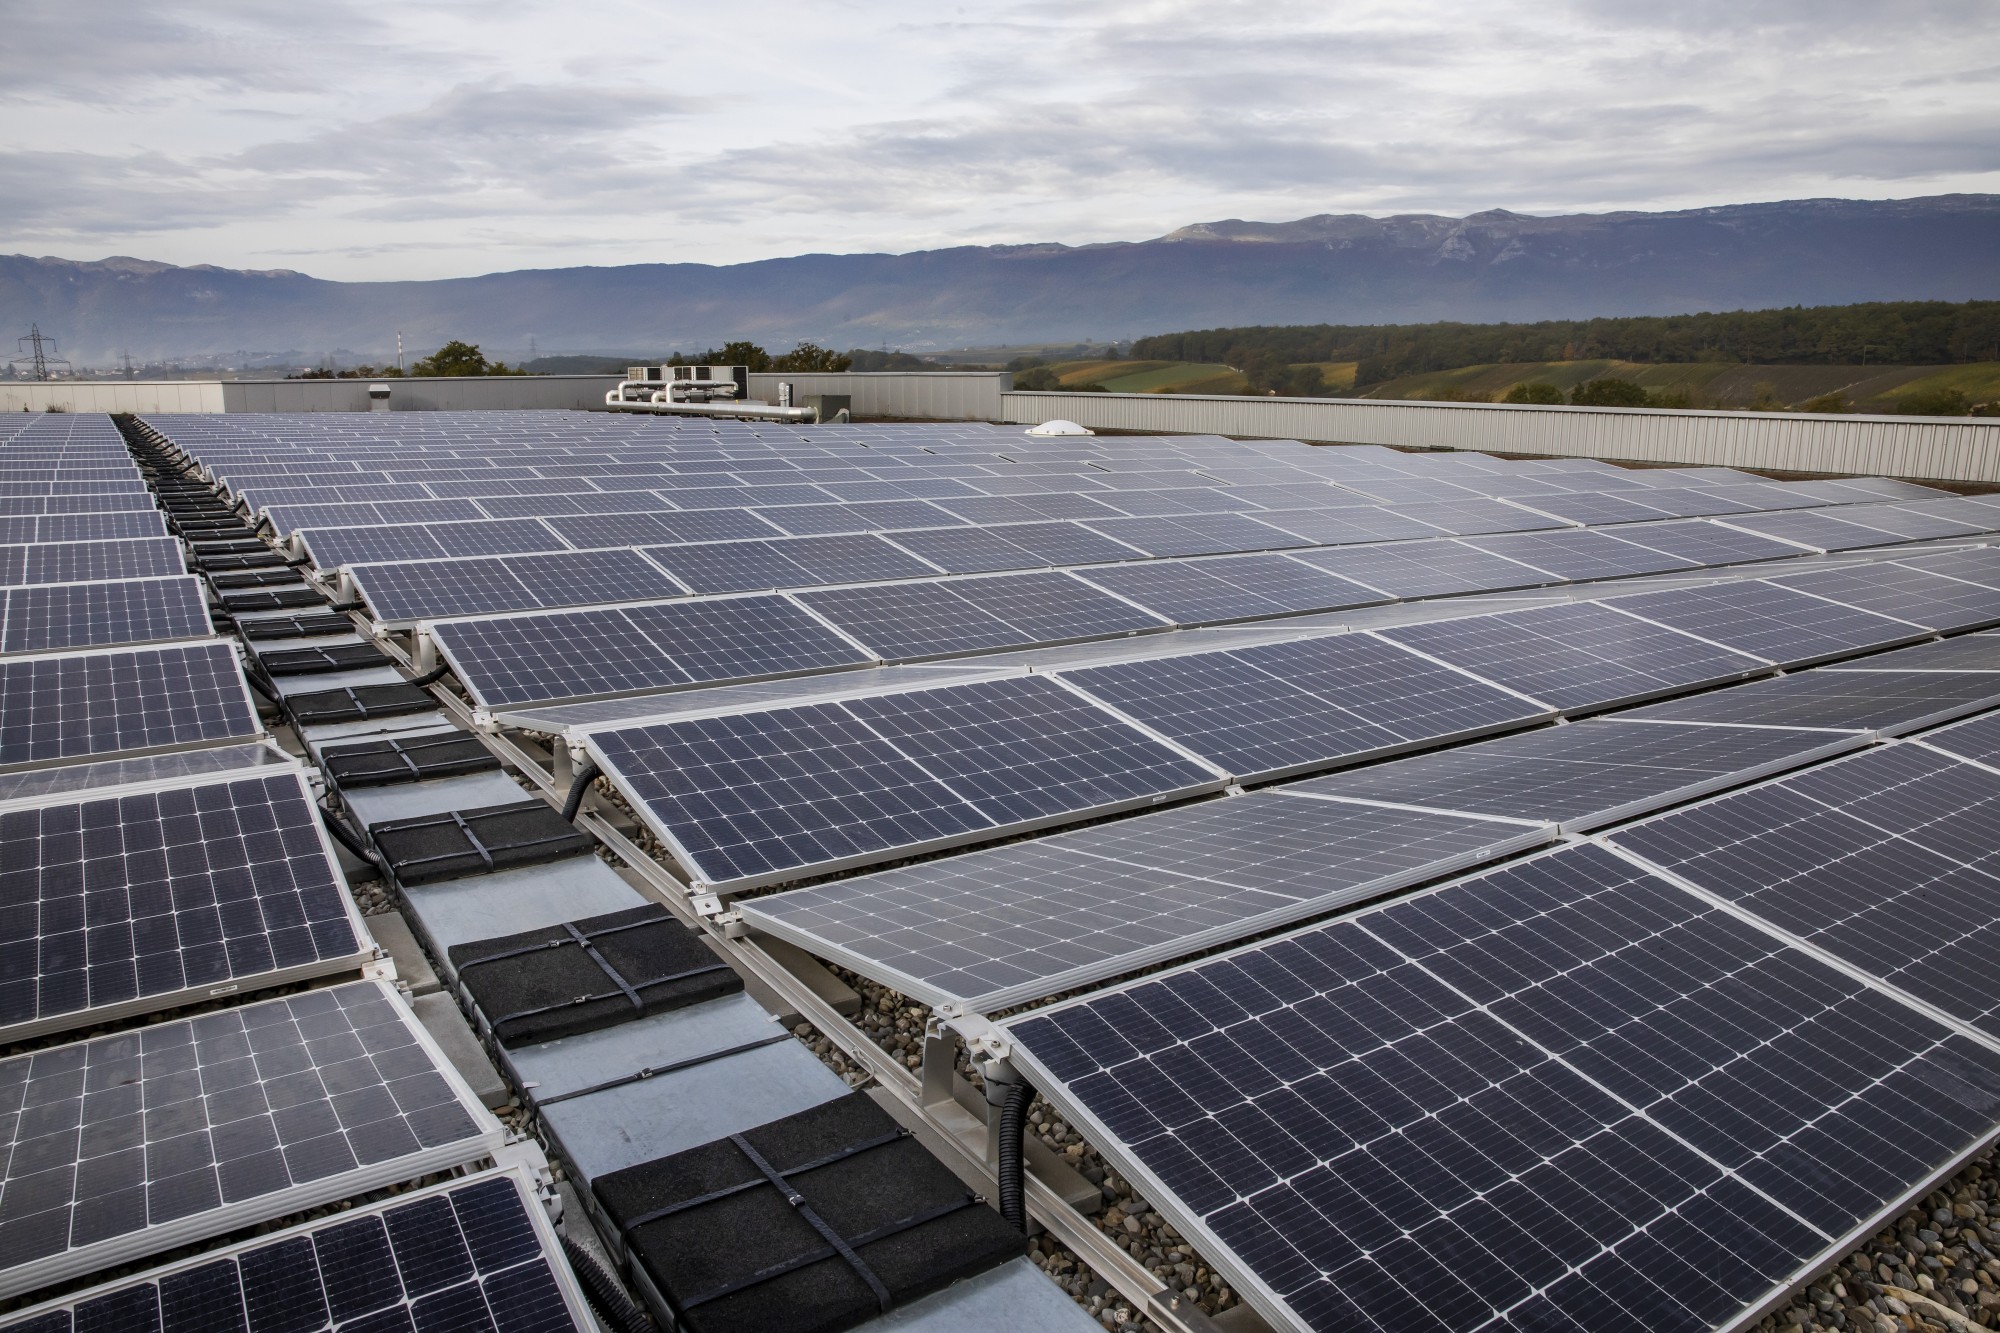 L’énergie solaire photovoltaïque produite est autoconsommée sur place à près de 10% pour les besoins du bâtiment, le reste est réinjecté dans le réseau principal.